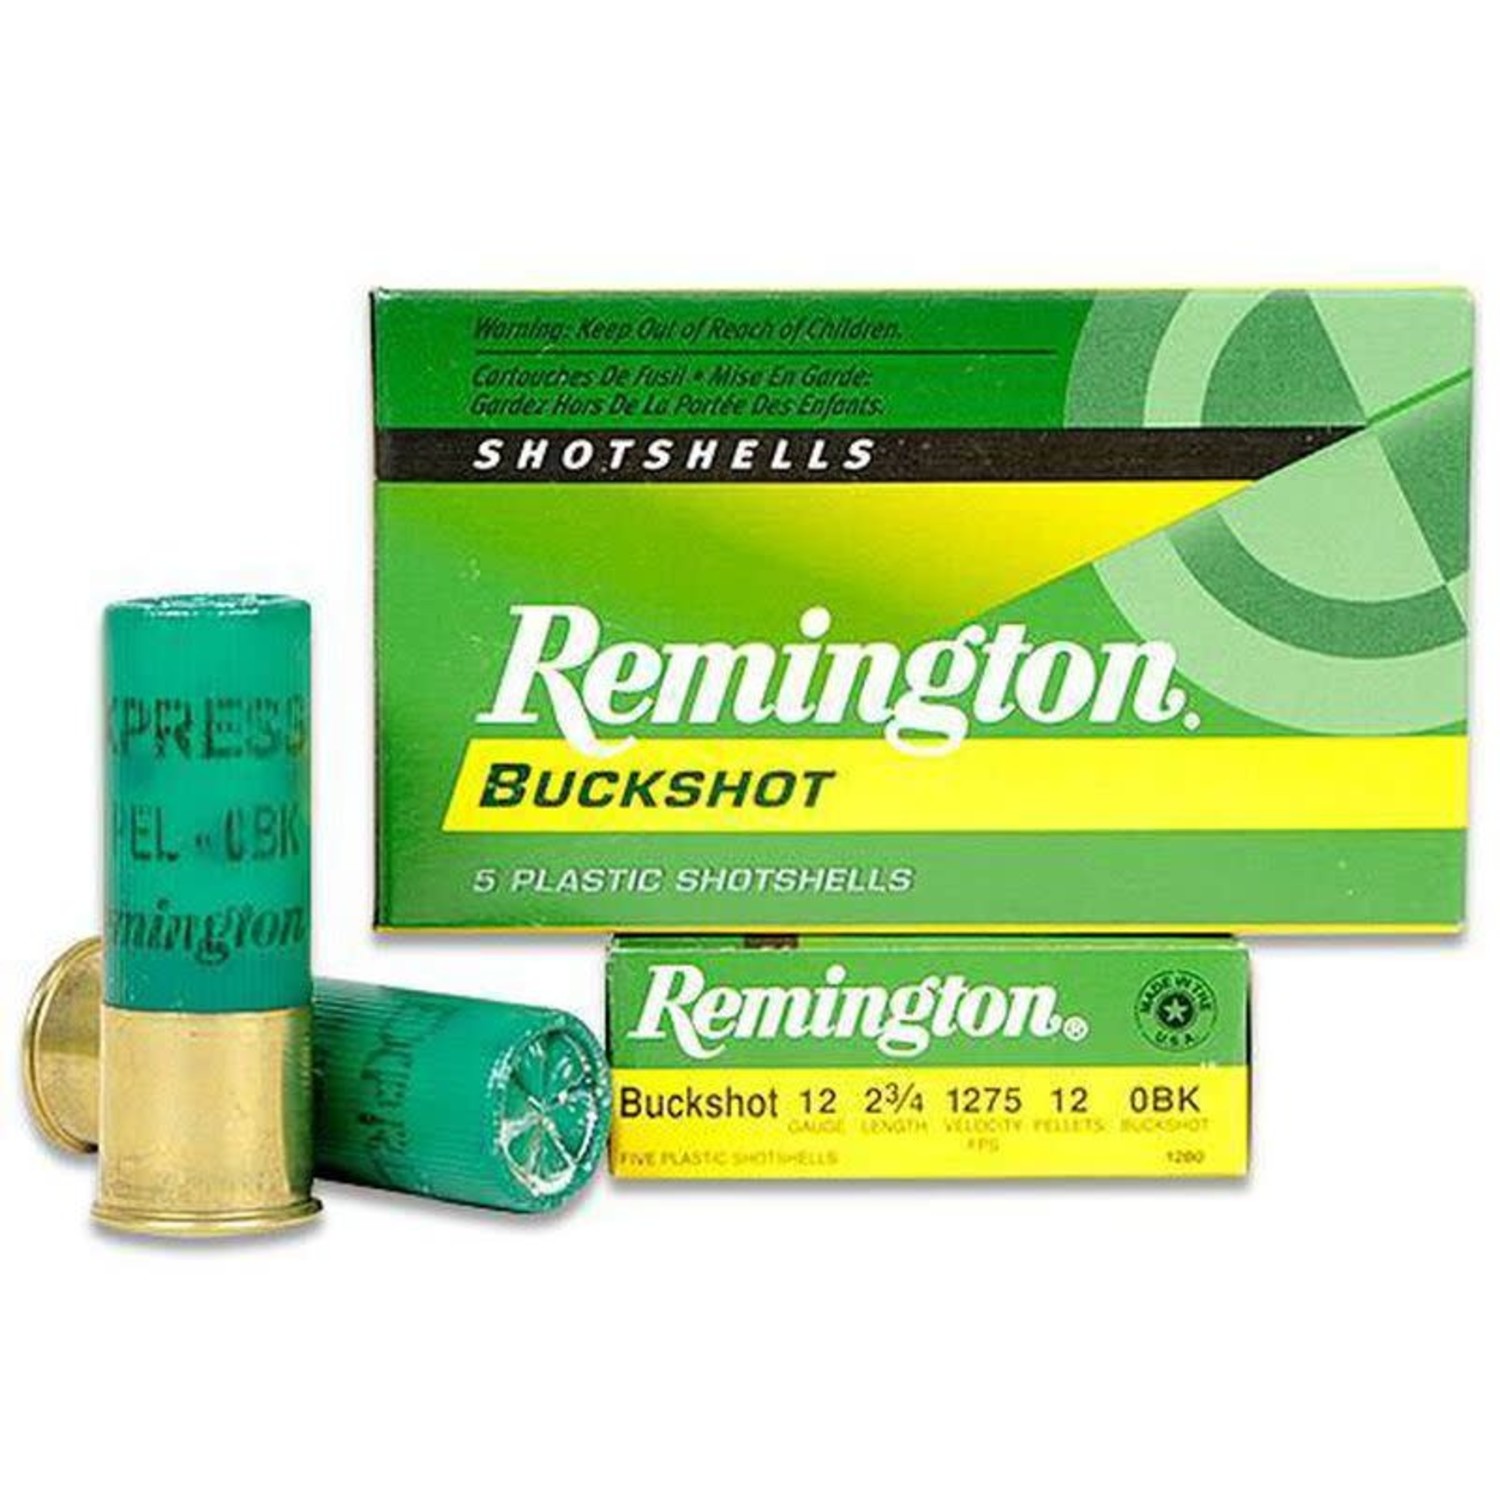 Remington 12 Gauge 2 3/4 1 Oz. #0 Buck (12 Pellets) - Outdoor Essentials